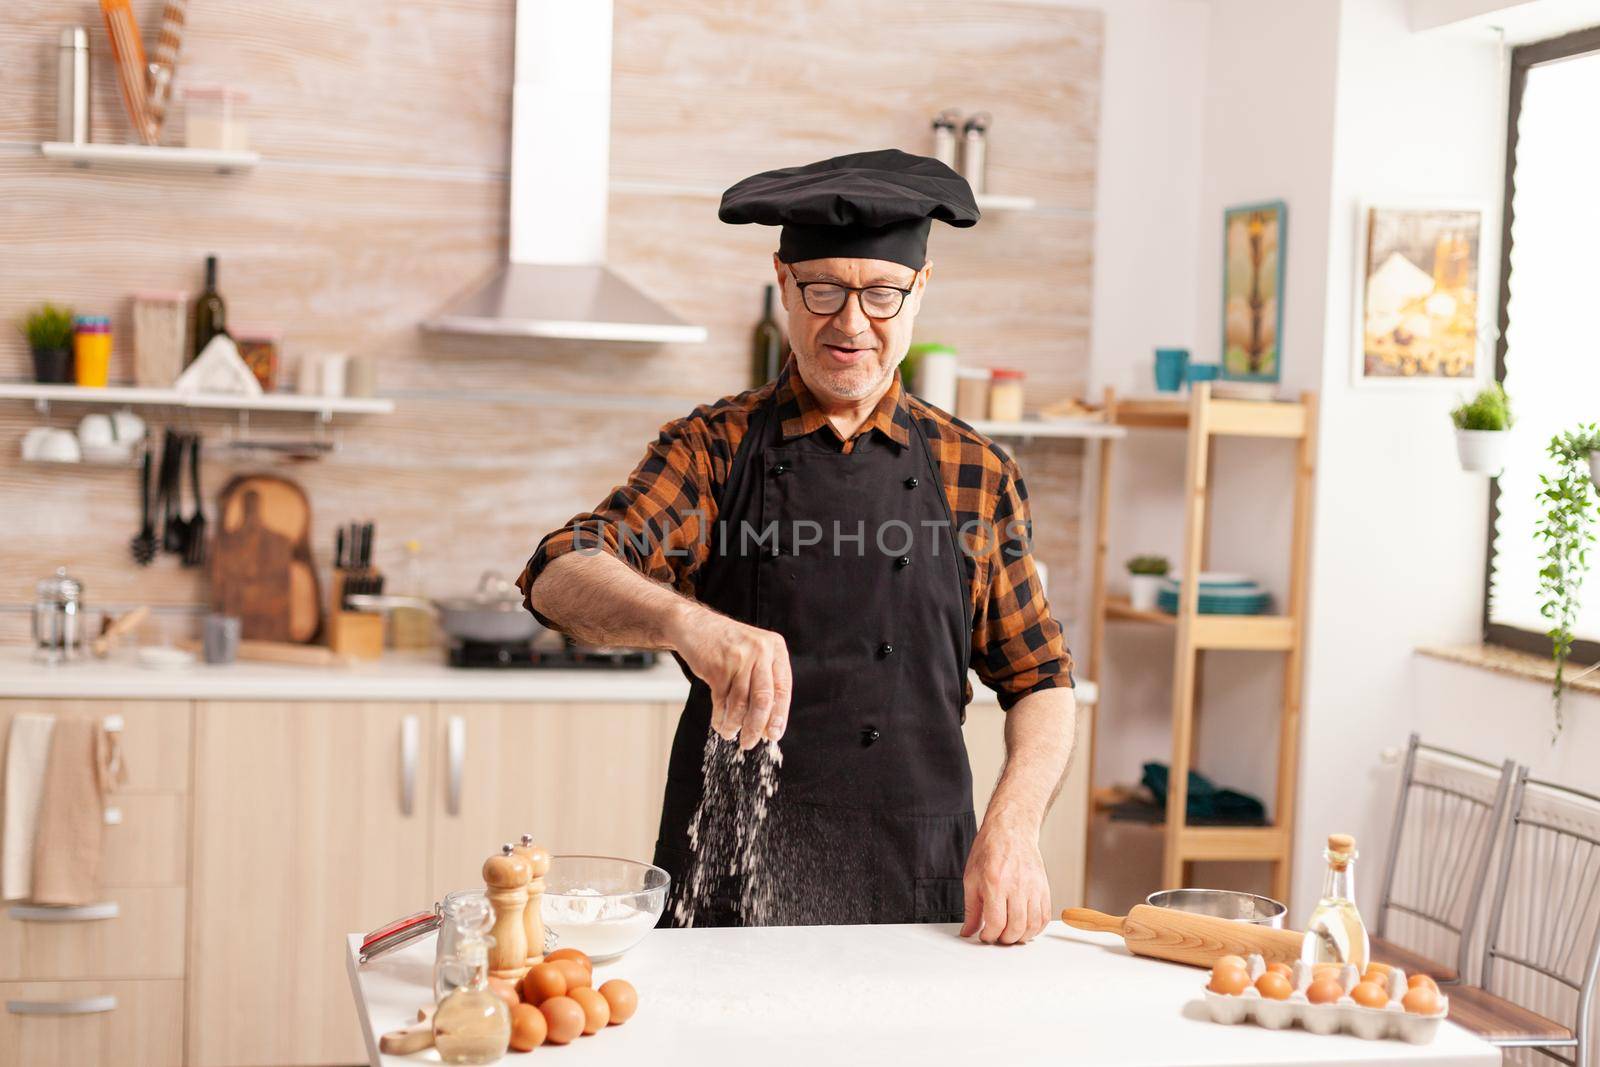 Elderly baker preparing tasty food by DCStudio